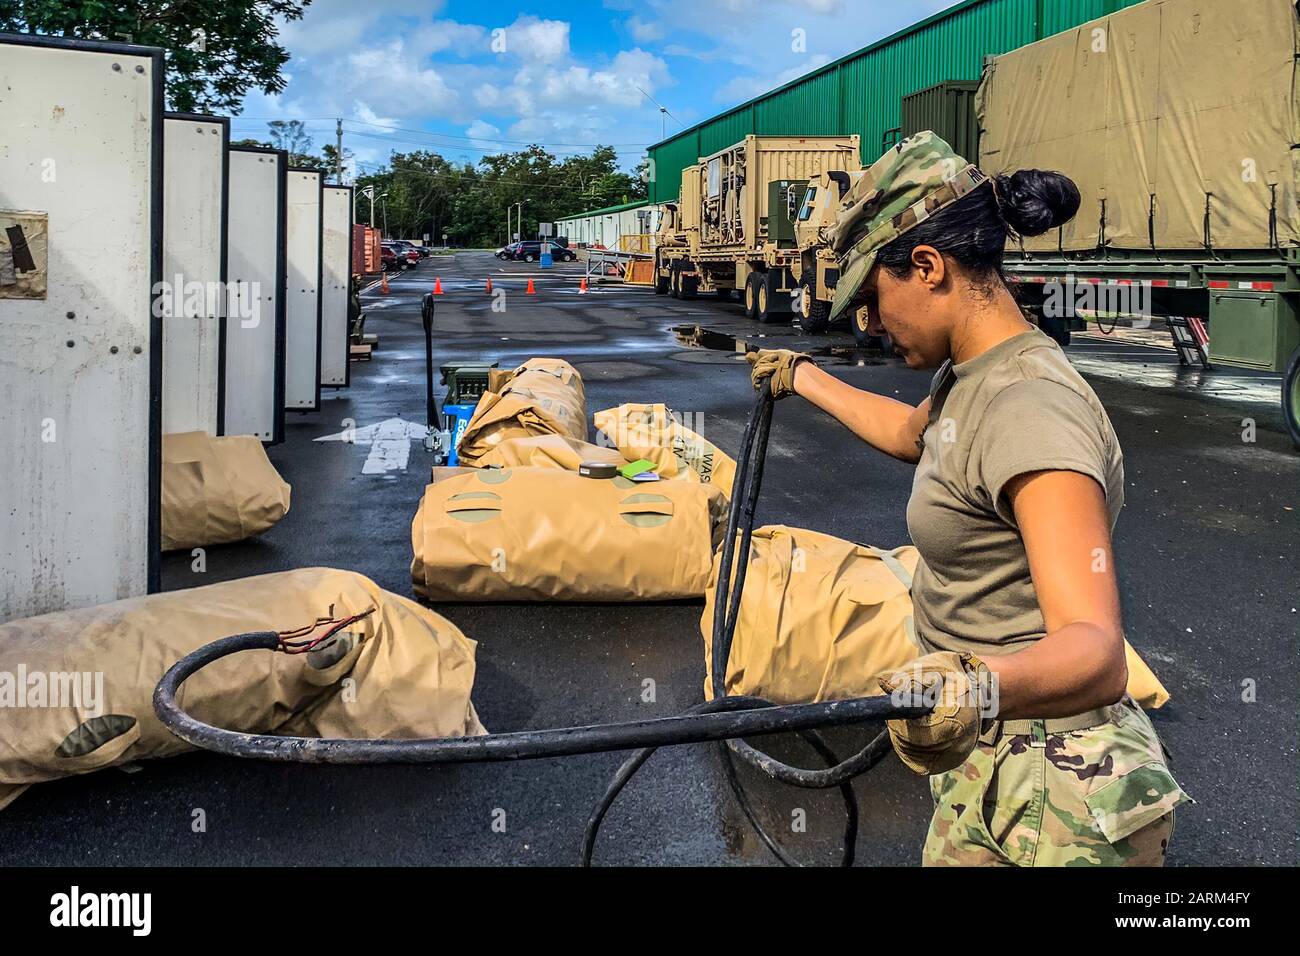 Soldaten der 430th Quartermaster Company, U.S. Army Reserve Multifunctional Geographic Command for the Caribbean, gehen mit den Inspektionen und Kontrollen, am 12. Januar, voran, um eine eventuelle Aktivierung zur Unterstützung der vertriebenen Bürger im Südwesten von Puerto Rico vorzubereiten. Als Folge der jüngsten Erdbeben in der Region. Stockfoto